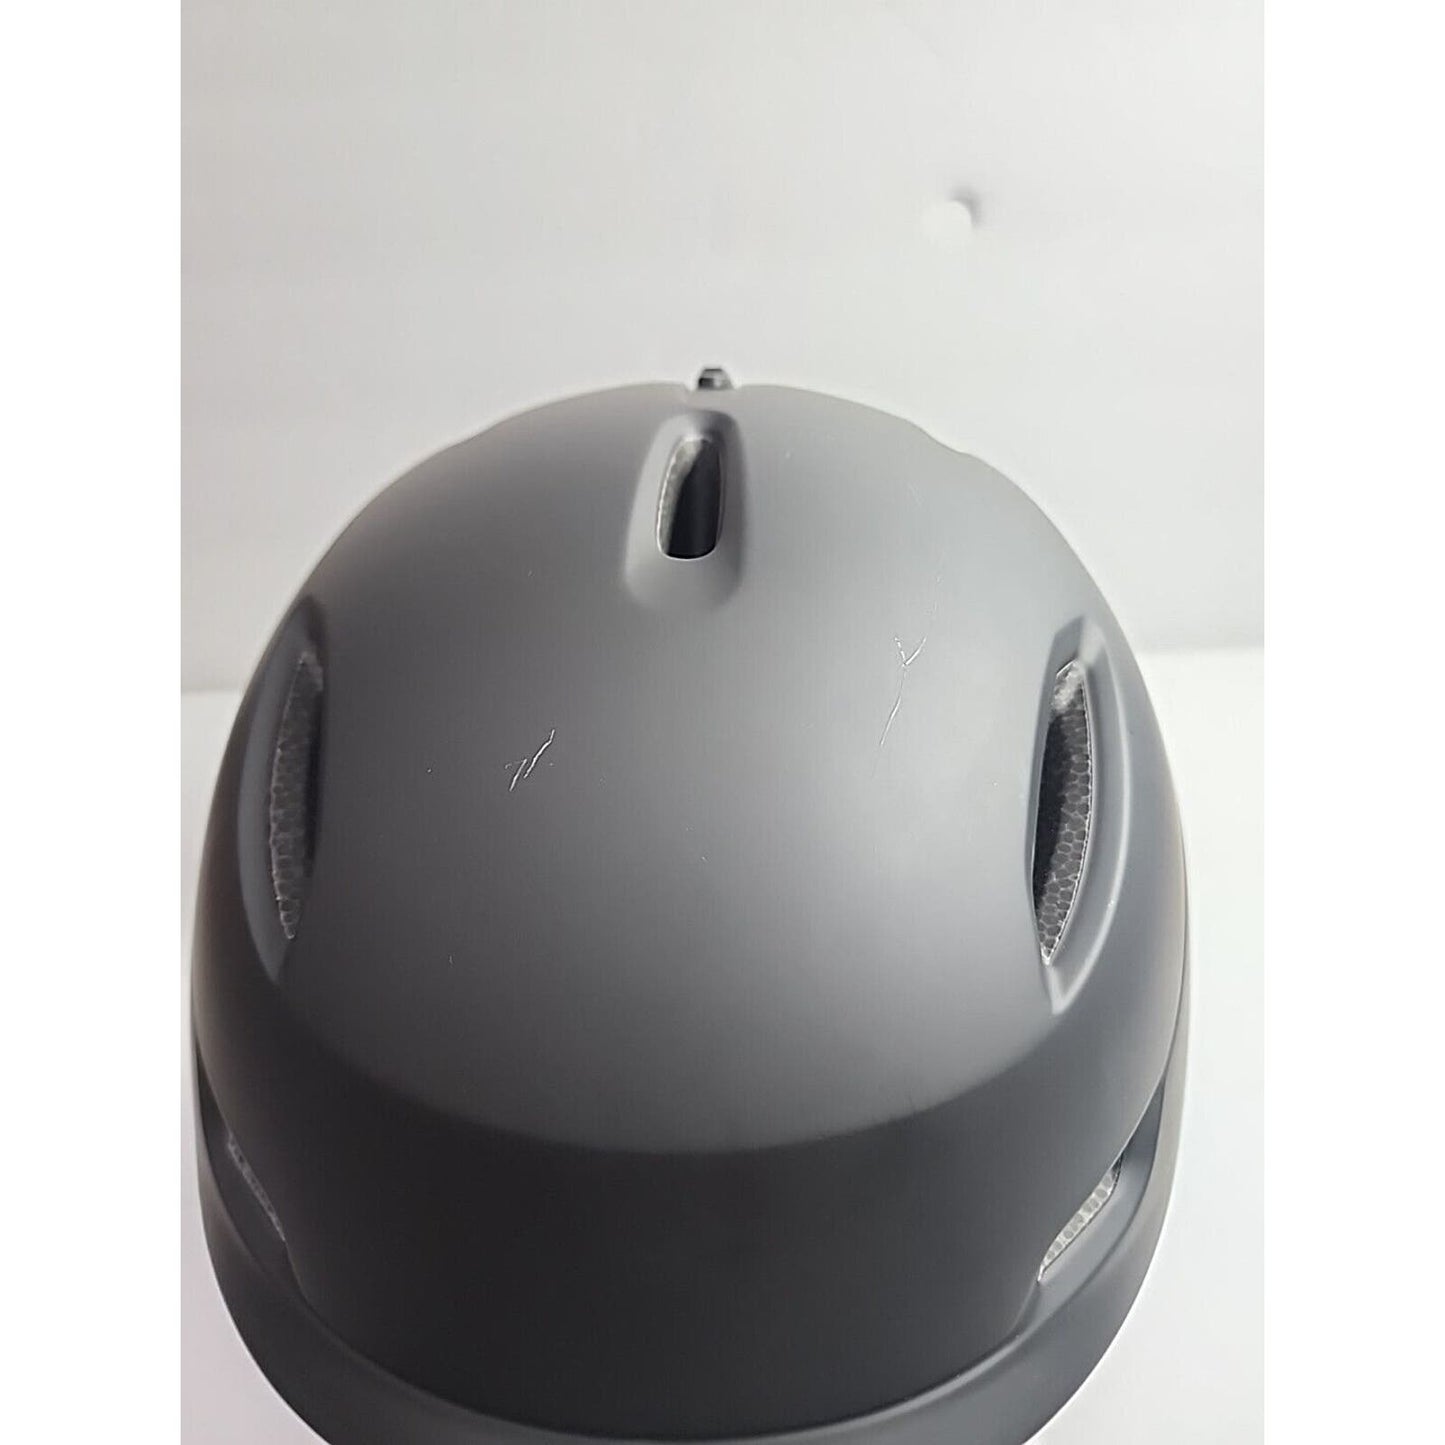 Snowboard Helmet, Ski Helmet Adult Large-Adjustable Vents, ABS Shell DBIO